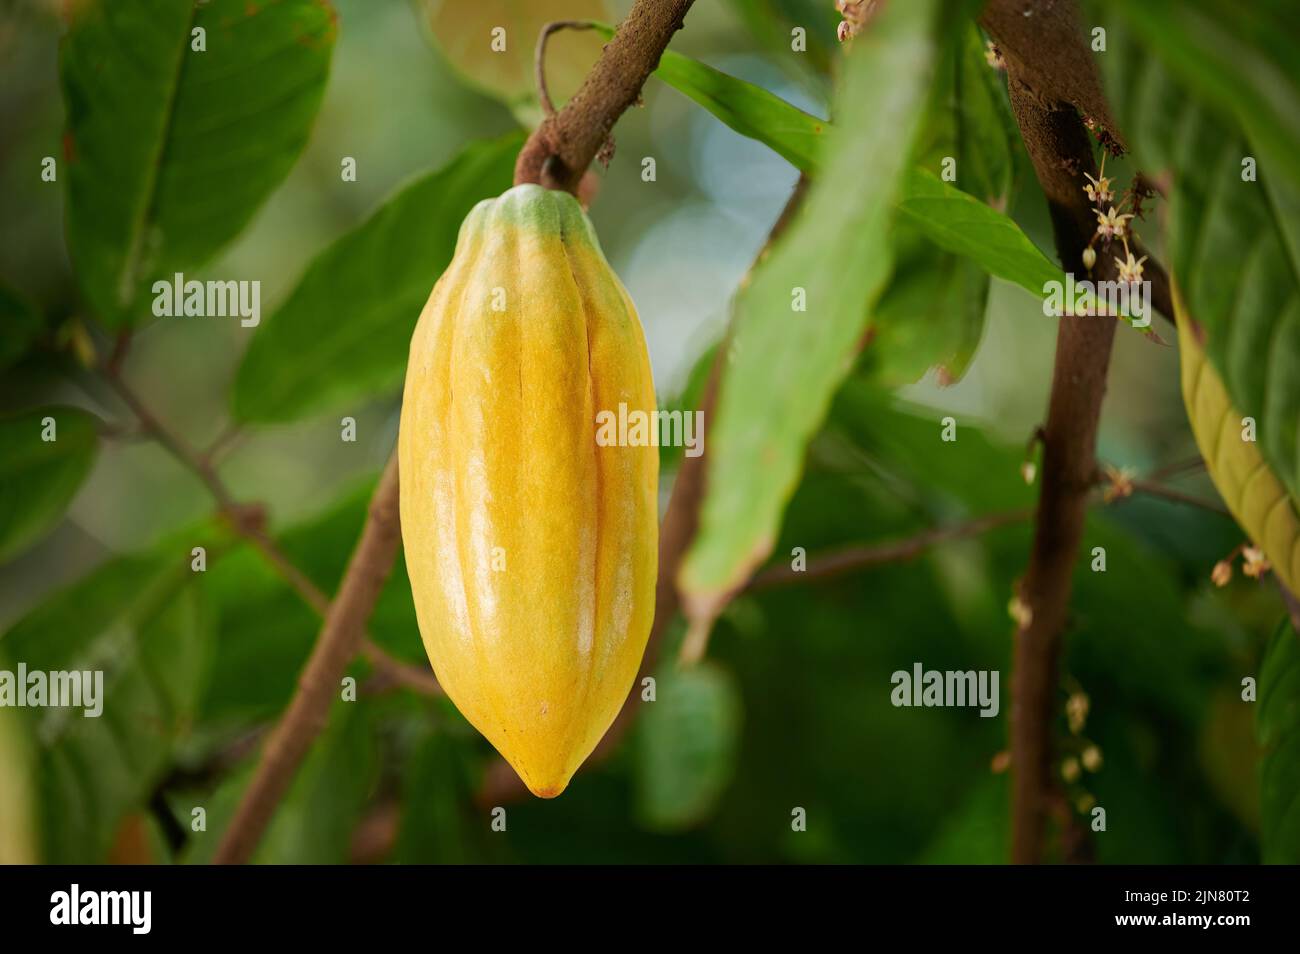 Organisch gelbe Kakaoschote hängen am Baum auf verschwommenem Pflanzenhintergrund Stockfoto